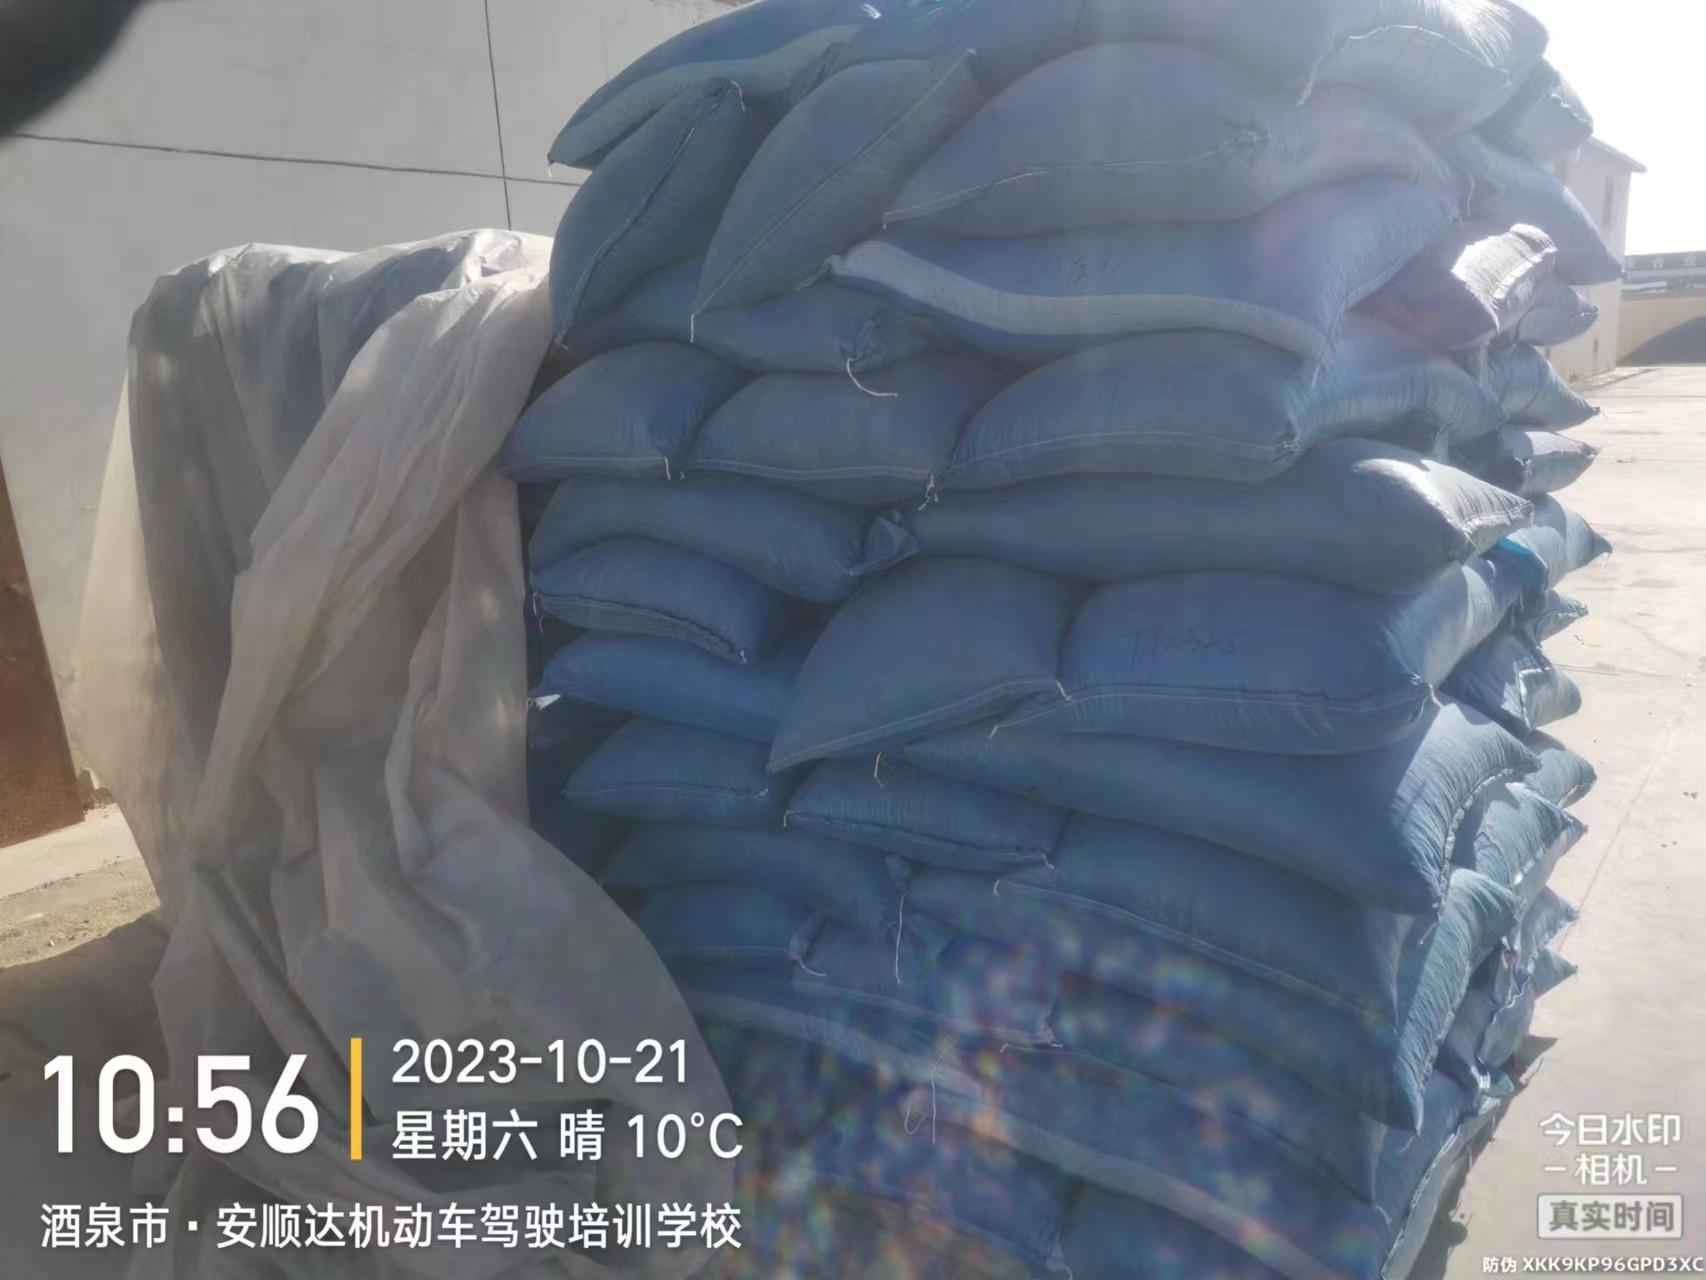 21.4吨玉米种子拍卖公告